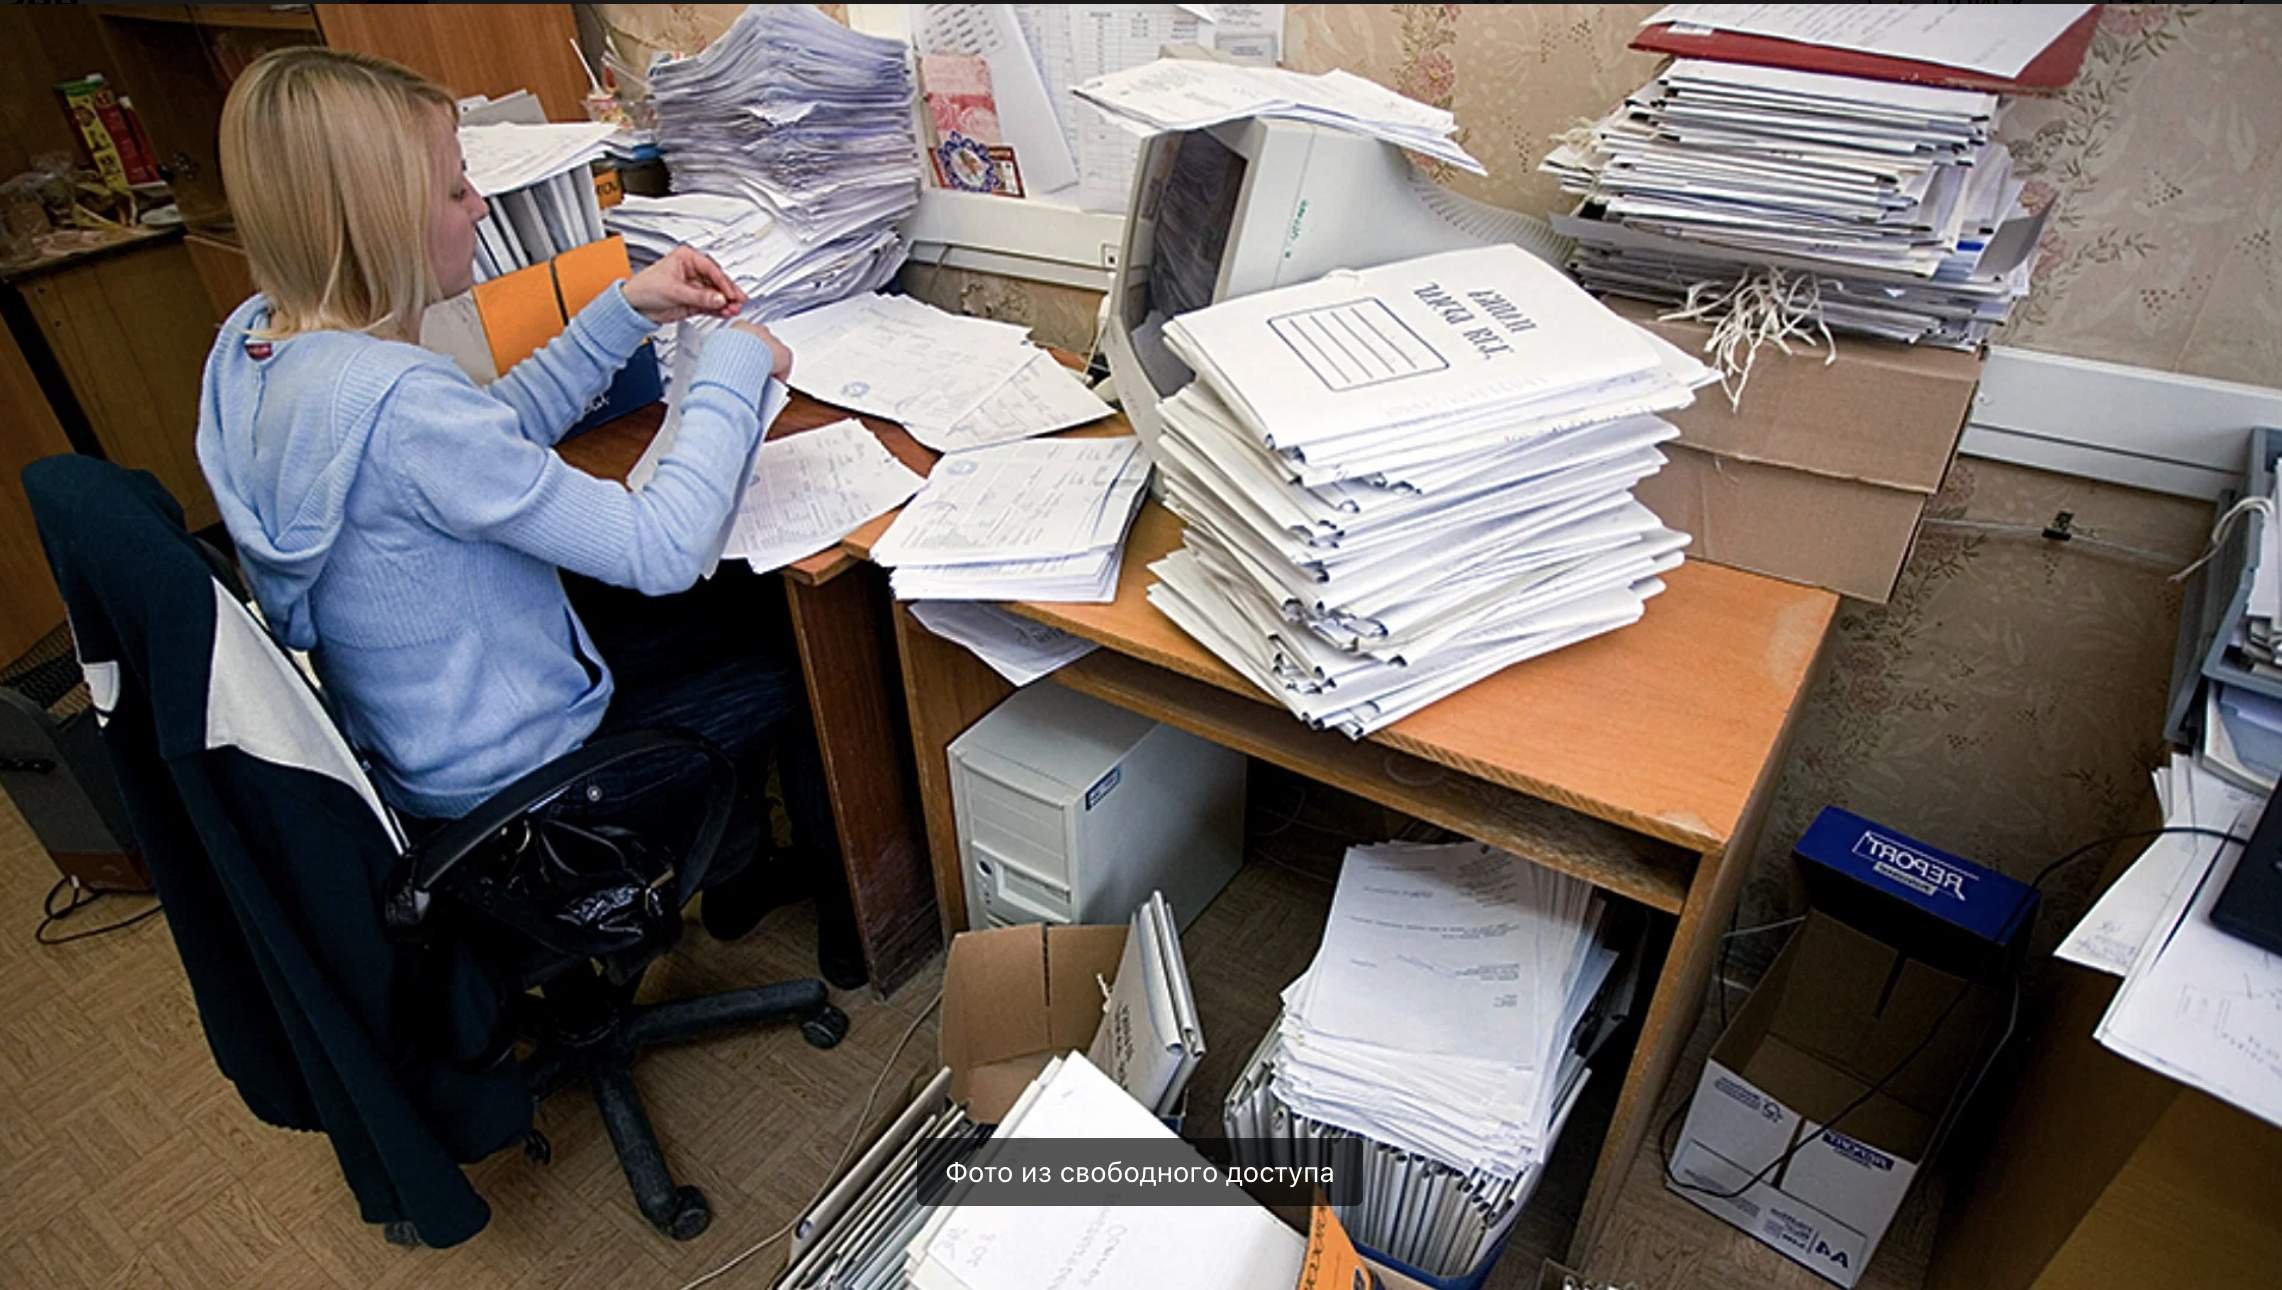 Много бумаг на столе. Стол заваленный бумагами. Стол заваленный документами. Бумаги на столе. Завал бумаг в офисе.